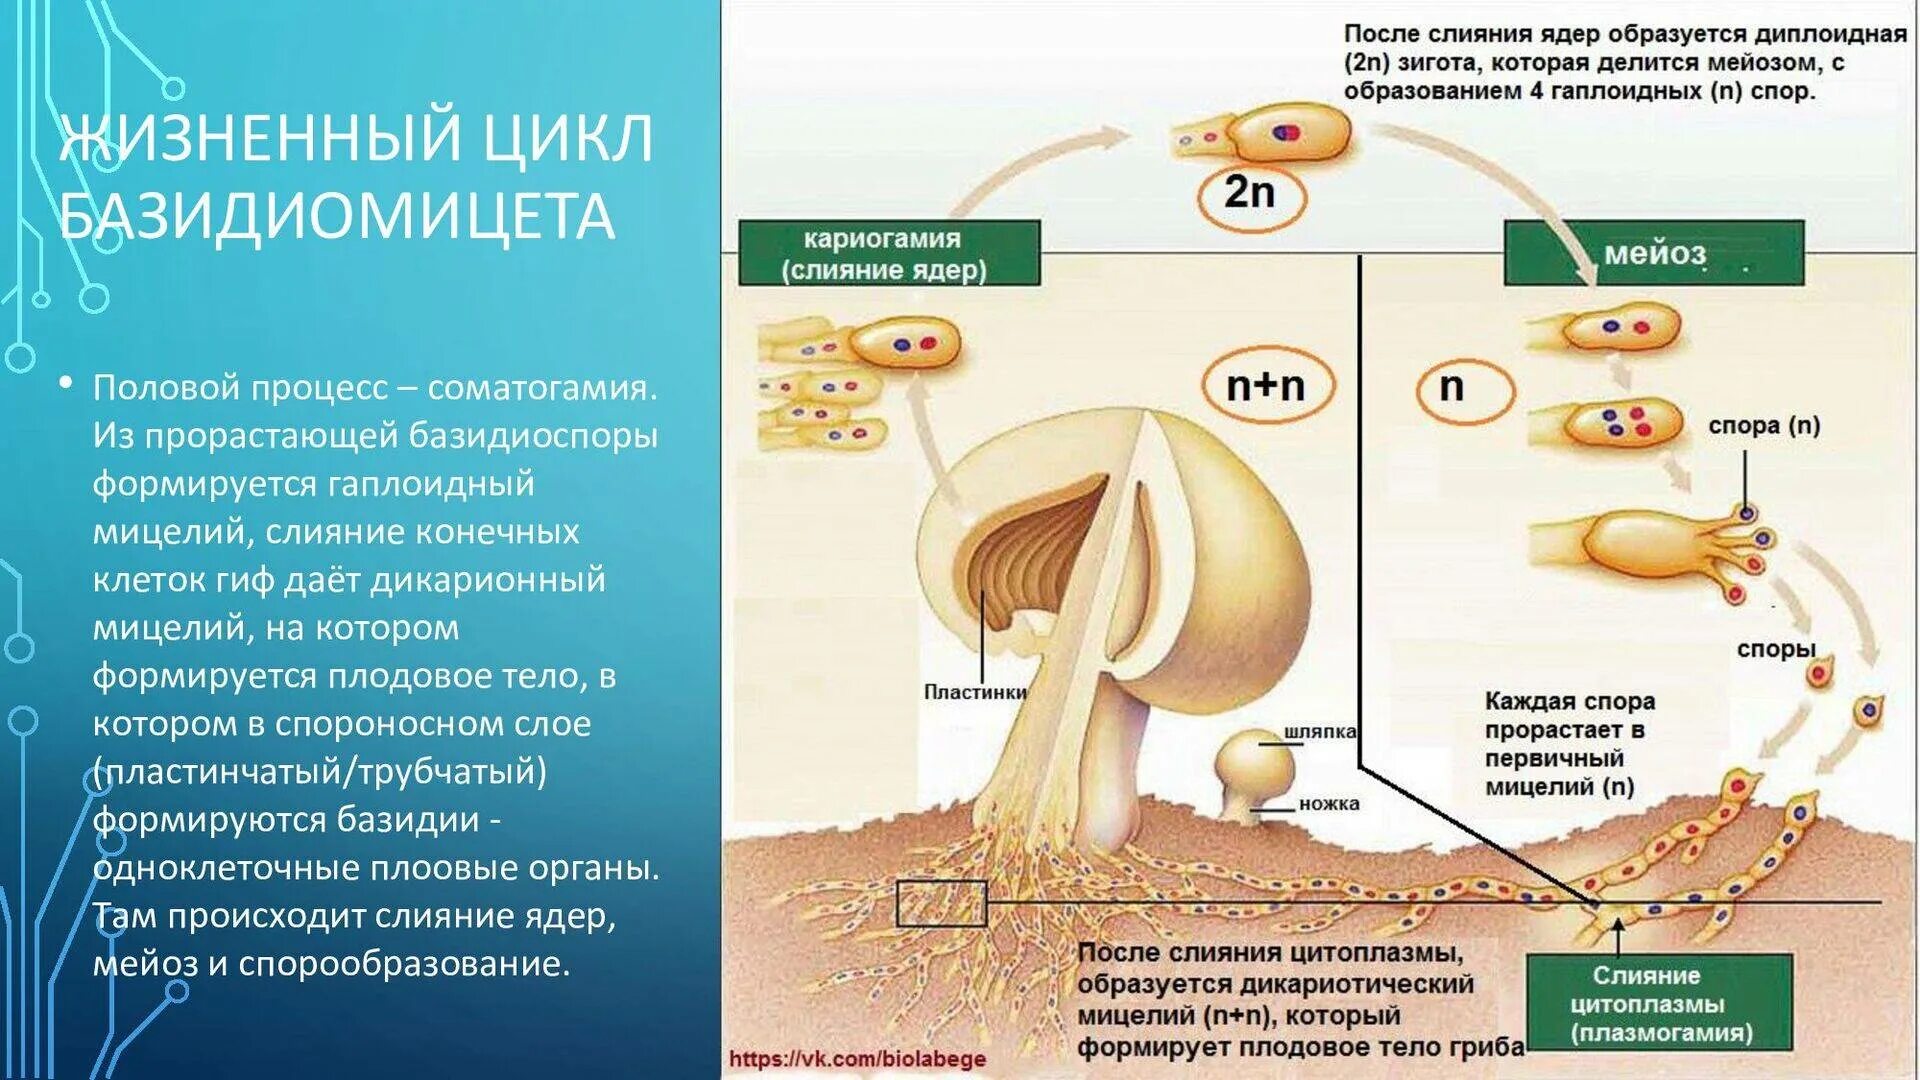 Споры грибов служат для. Жизненный цикл шляпочного гриба. Жизненный цикл гриба базидиомицета. Размножение шляпочного гриба схема. Жизненный цикл грибов схема.